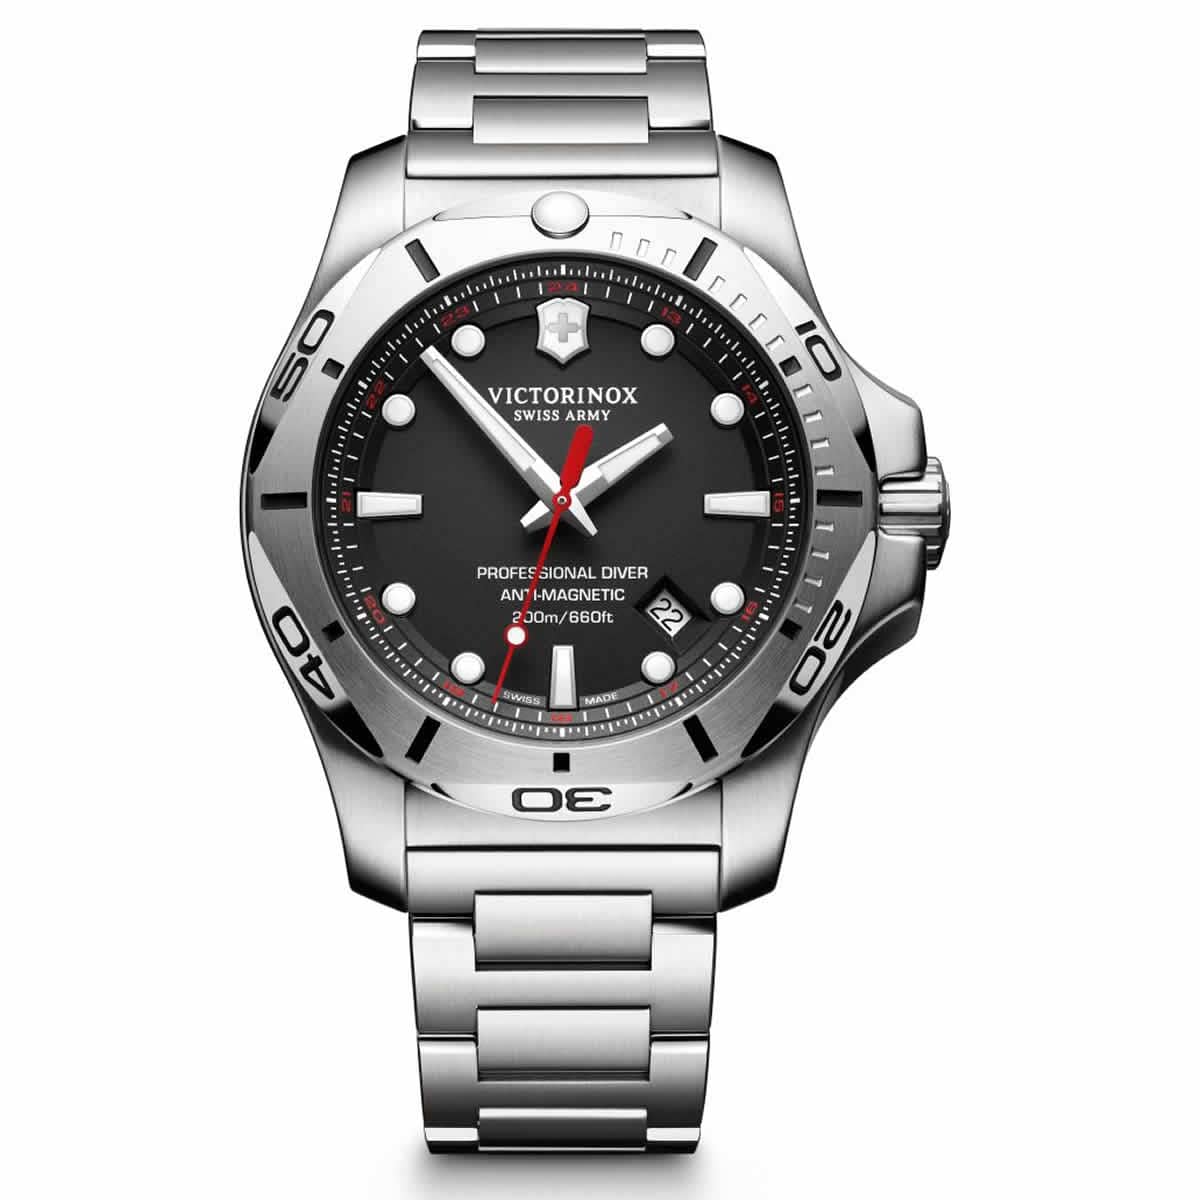 ビクトリノックススイスアーミー I.N.O.X. (イノックス) プロフェッショナルダイバー 241781 ブラック ステンレスベルト 腕時計